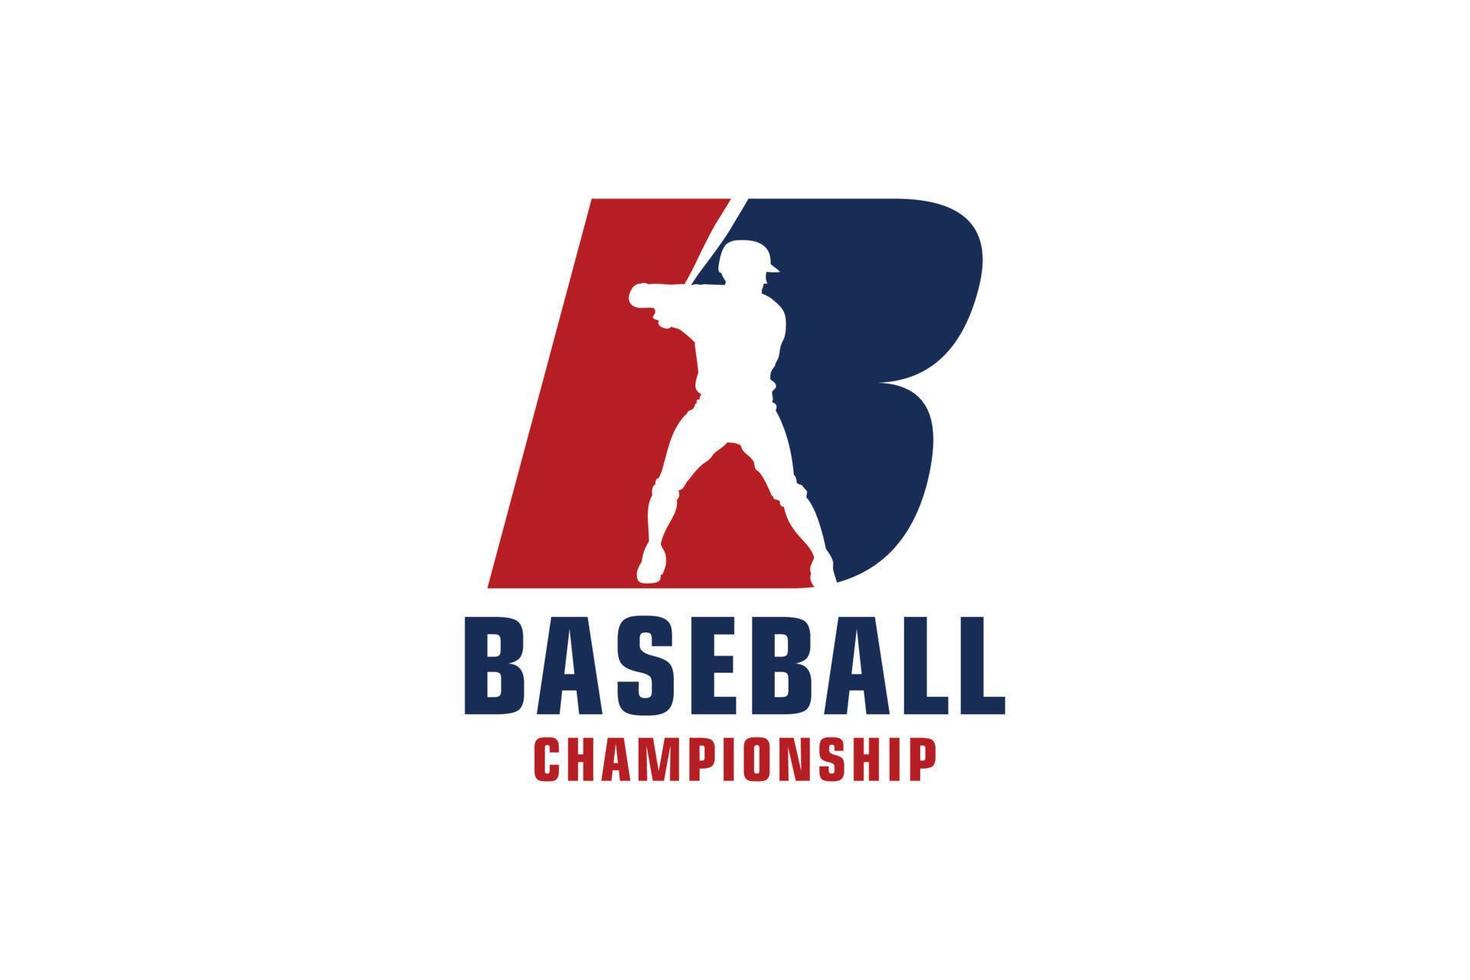 bokstaven b med baseball-logotypdesign. vektor designmallelement för sportlag eller företagsidentitet.